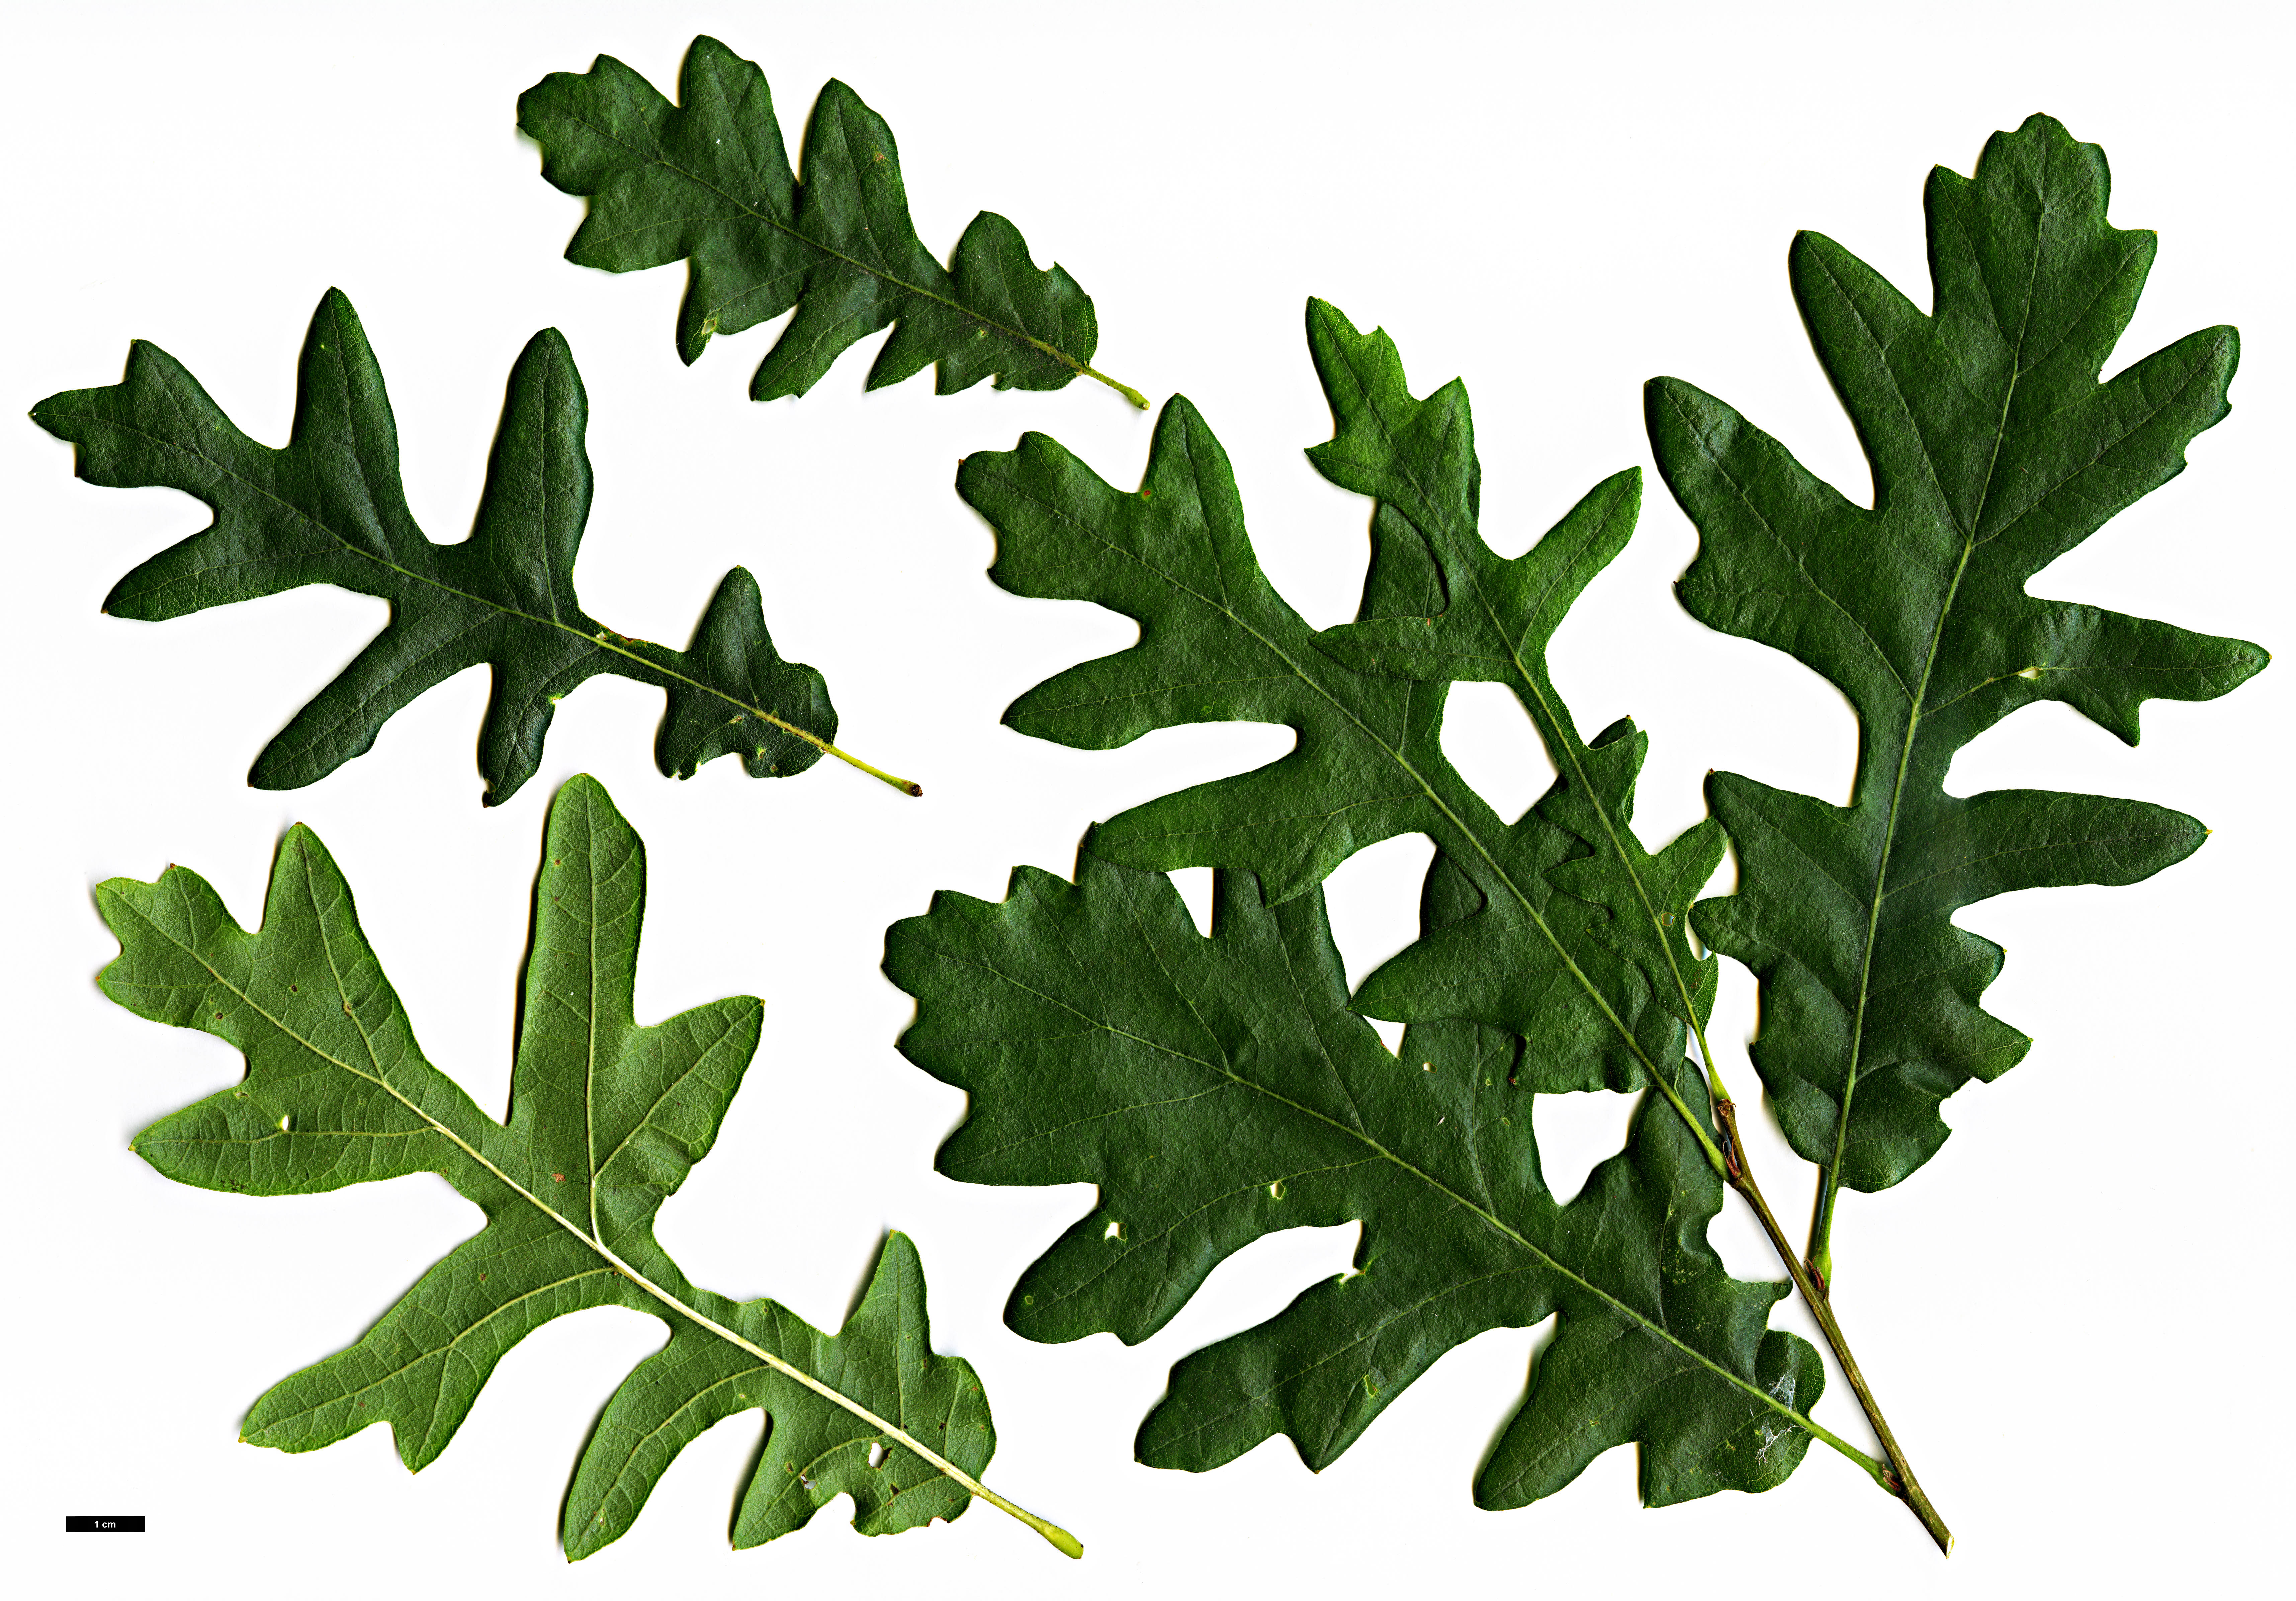 High resolution image: Family: Fagaceae - Genus: Quercus - Taxon: cerris